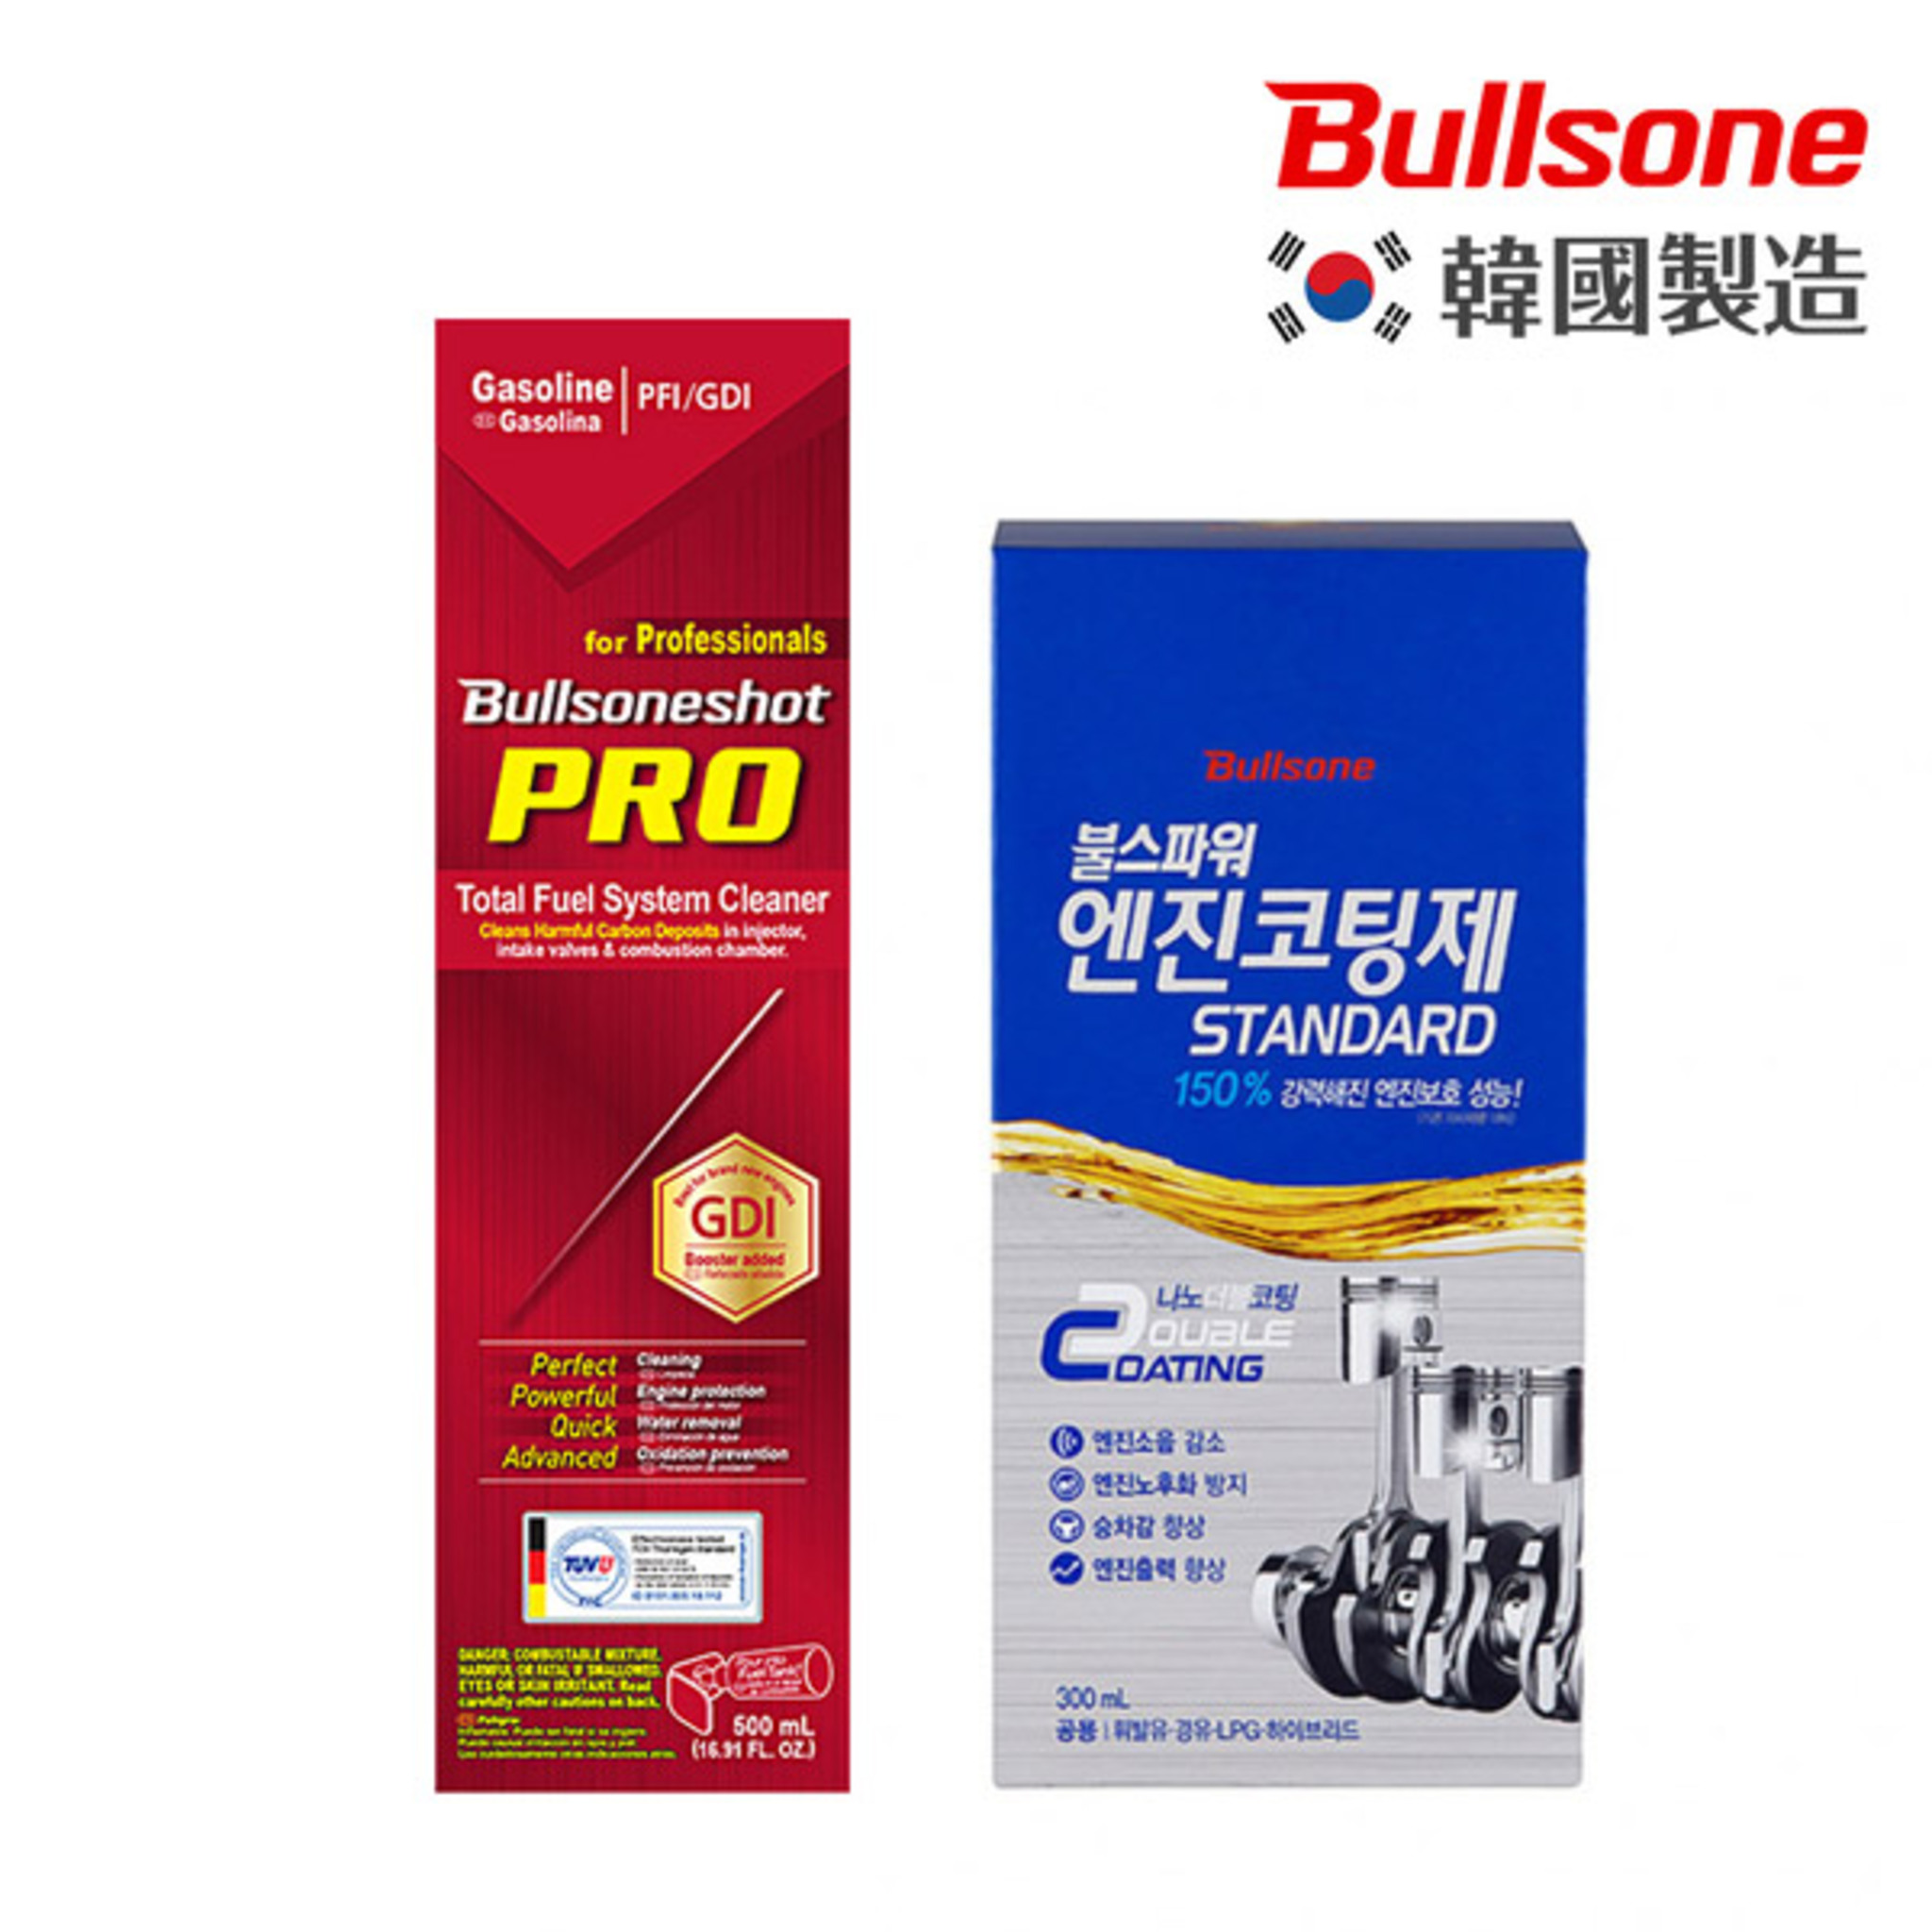 【超值組合】勁牛王 Bullsone 燃油添加劑 Pro+奈米碳機油添加劑